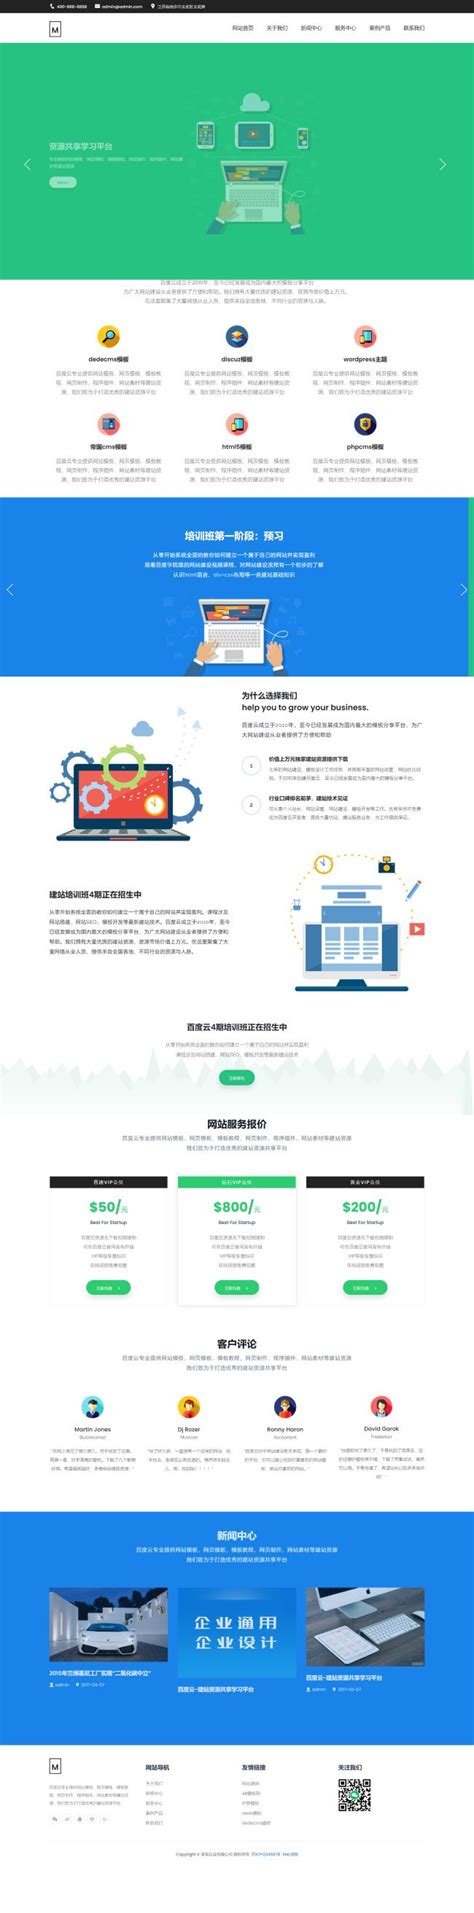 A013-网络建站广告设计 - 青舟网络